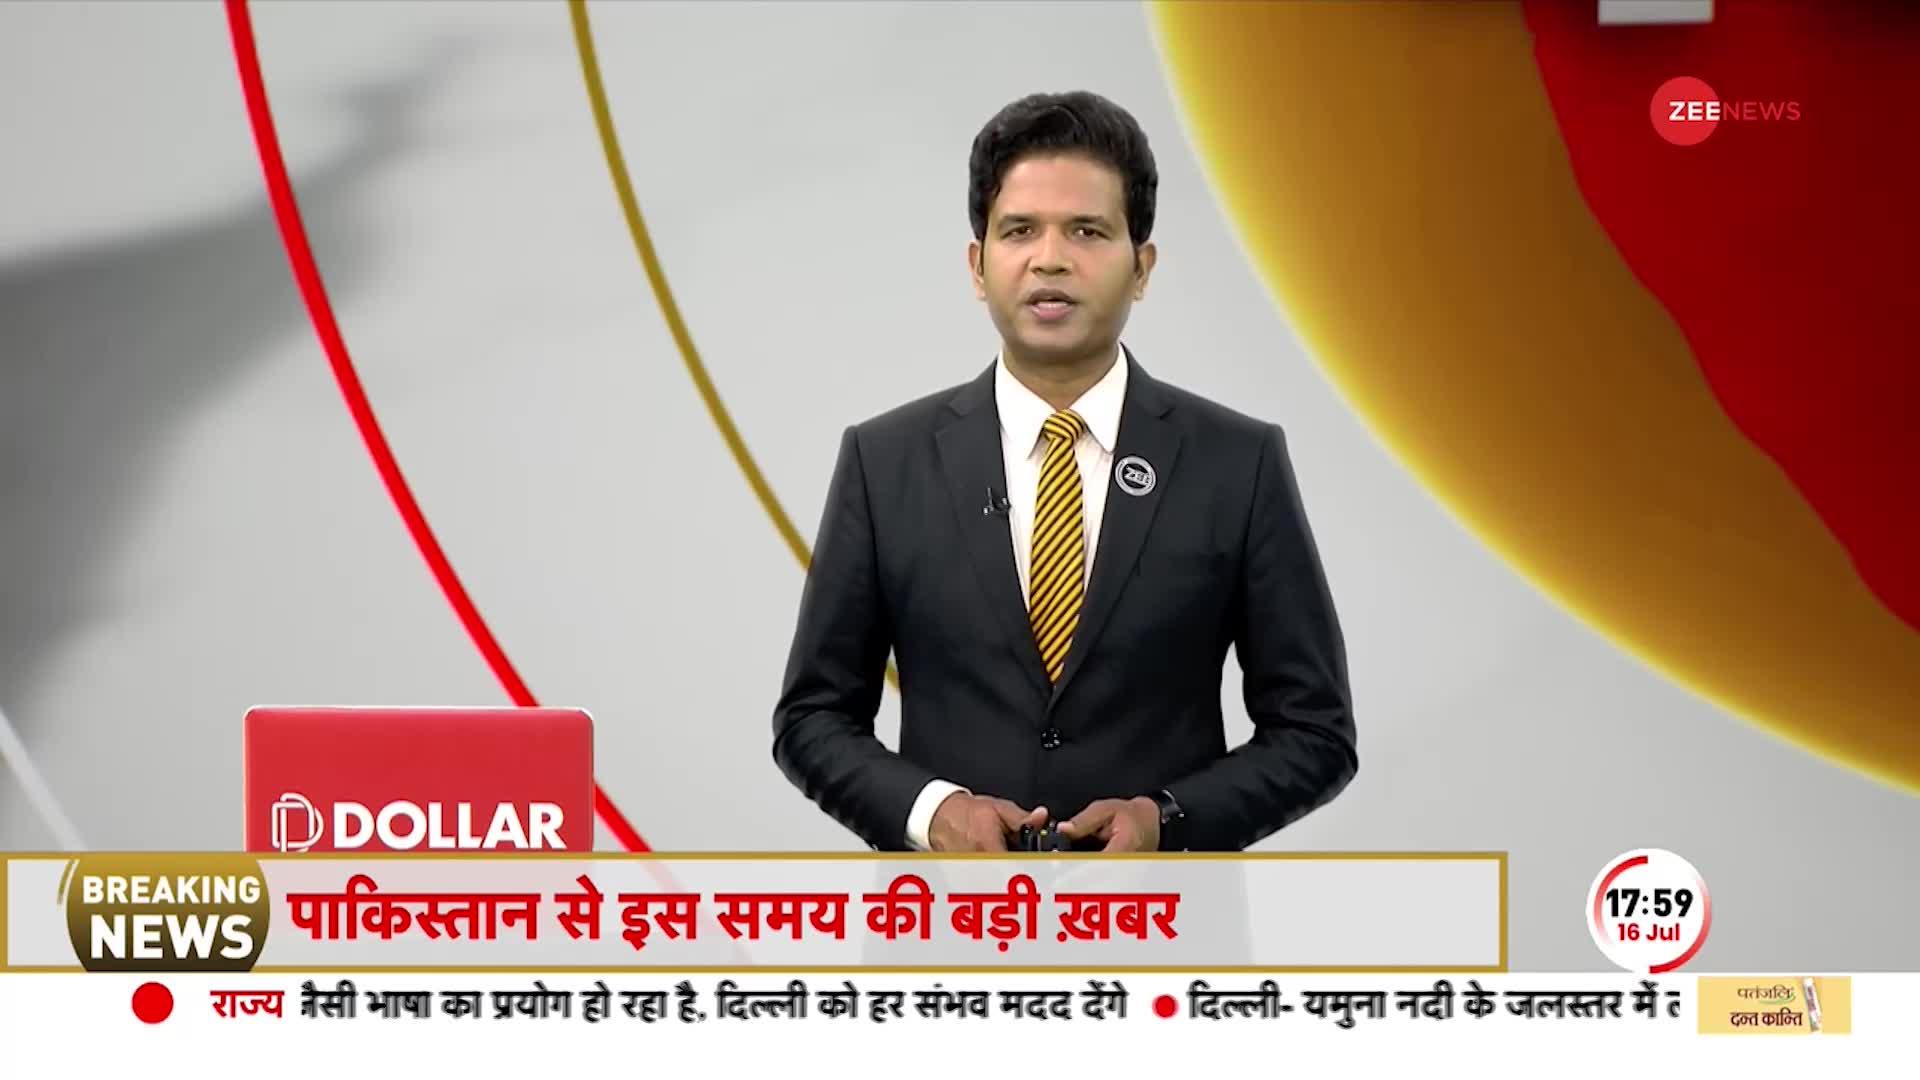 Deshhit: मोदी की विज़िट से गदगद मुस्लिम देश ! 'डॉलर' को भगाया 'रुपया' को अपनाया